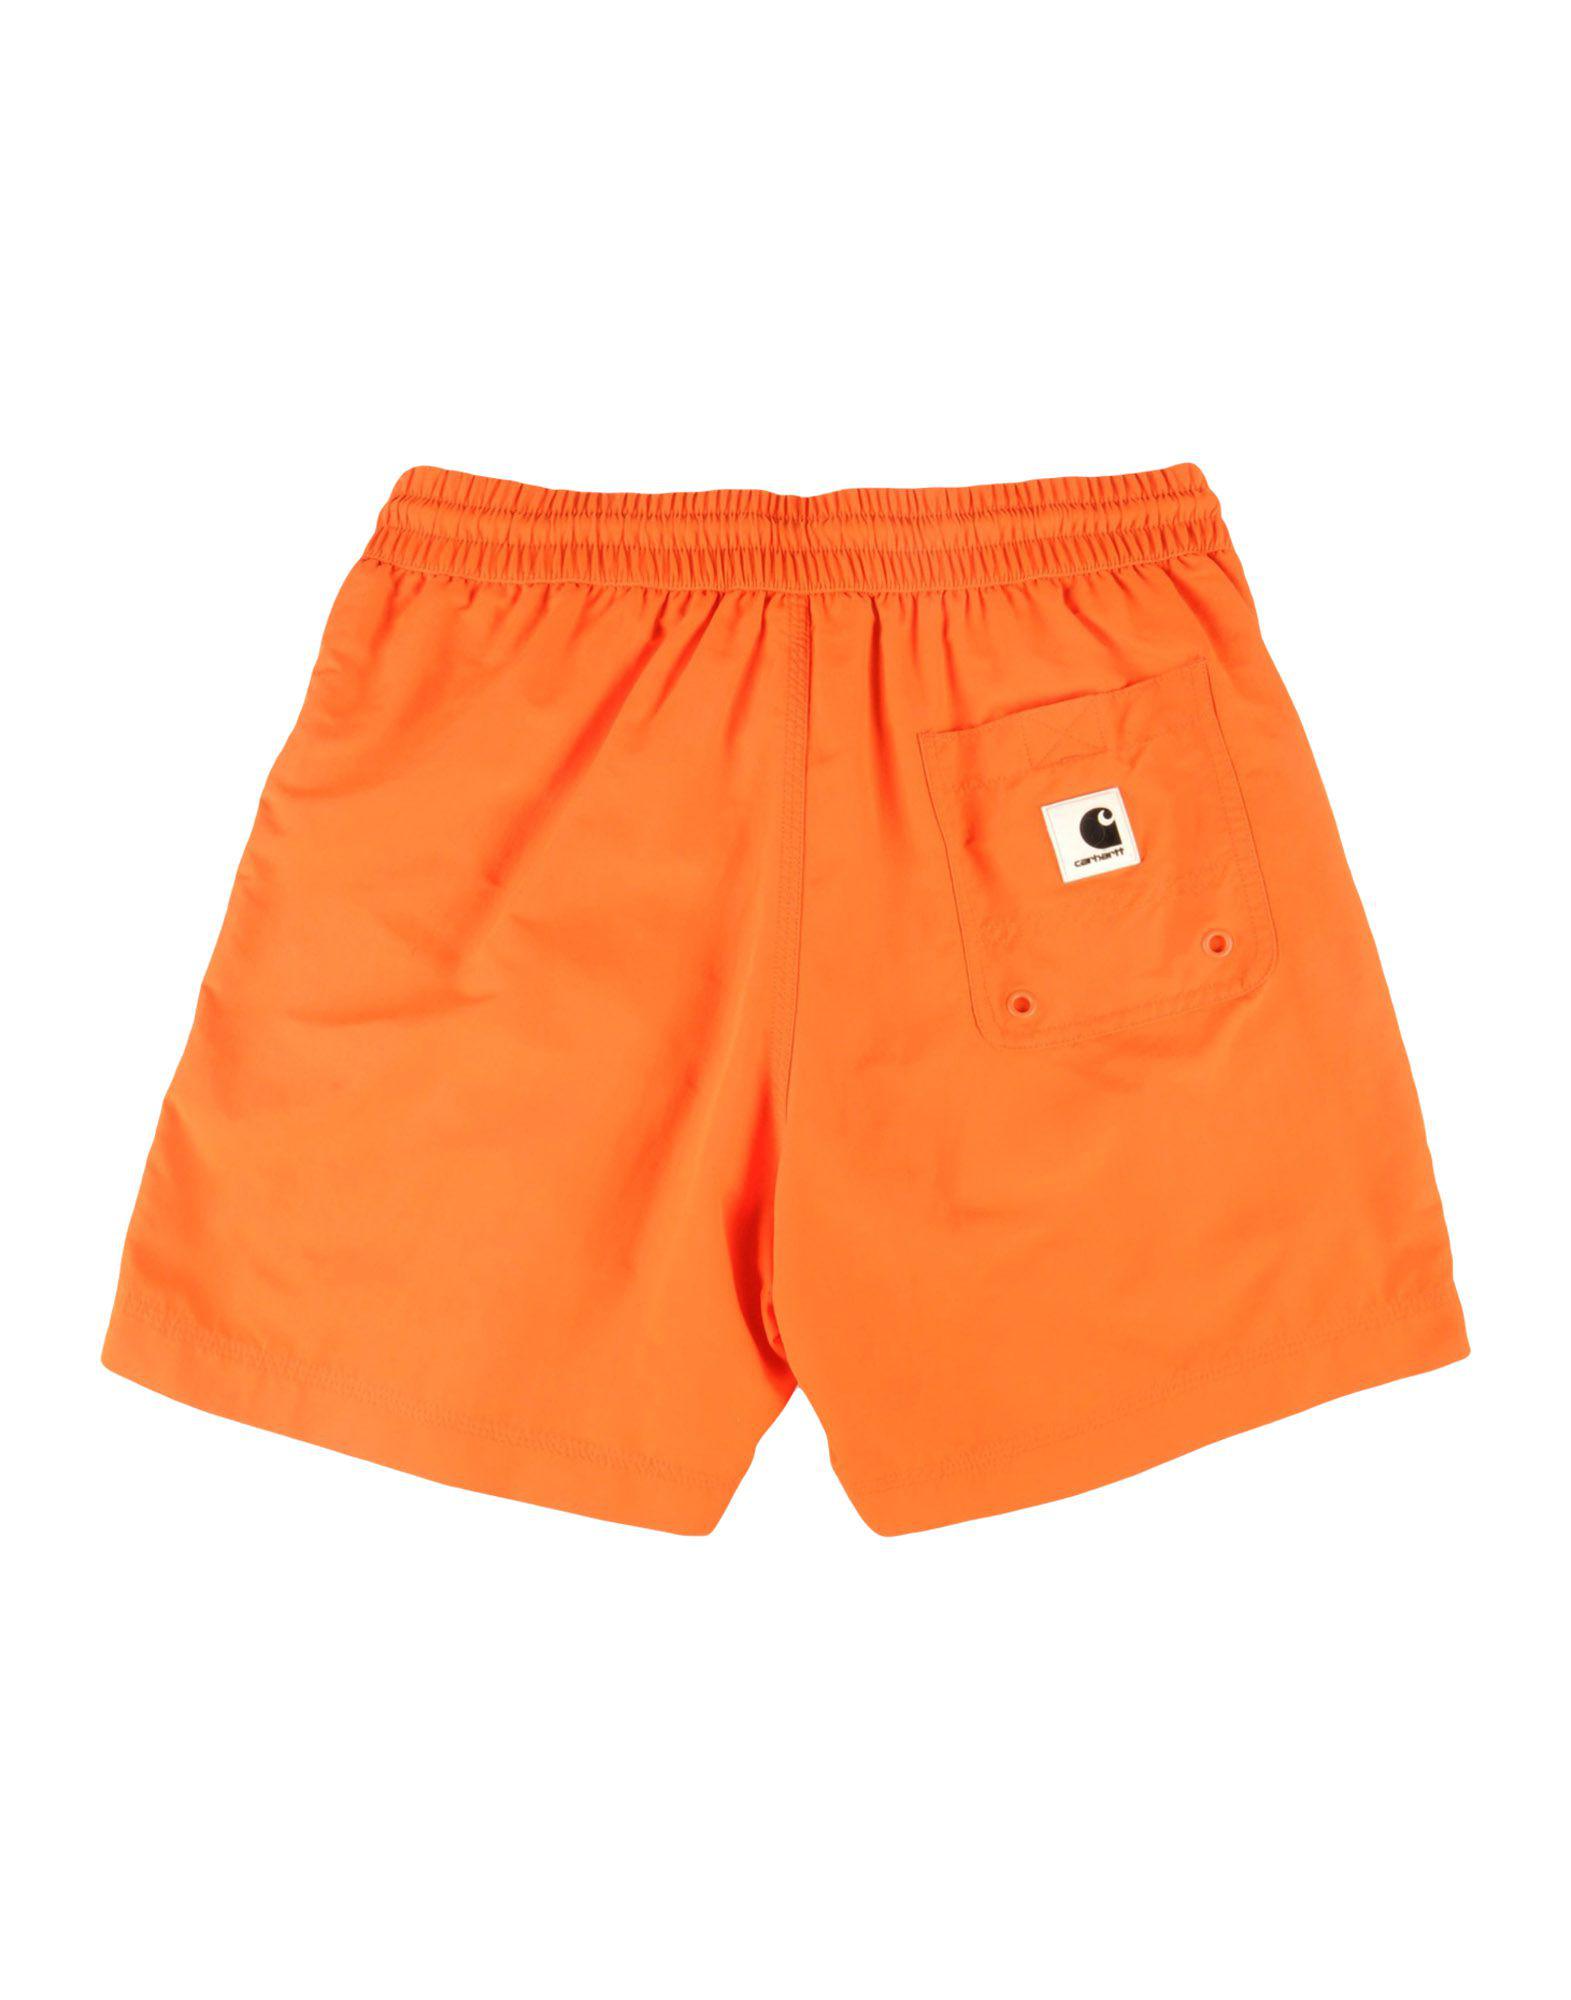 Lyst - Carhartt Swim Trunks in Orange for Men